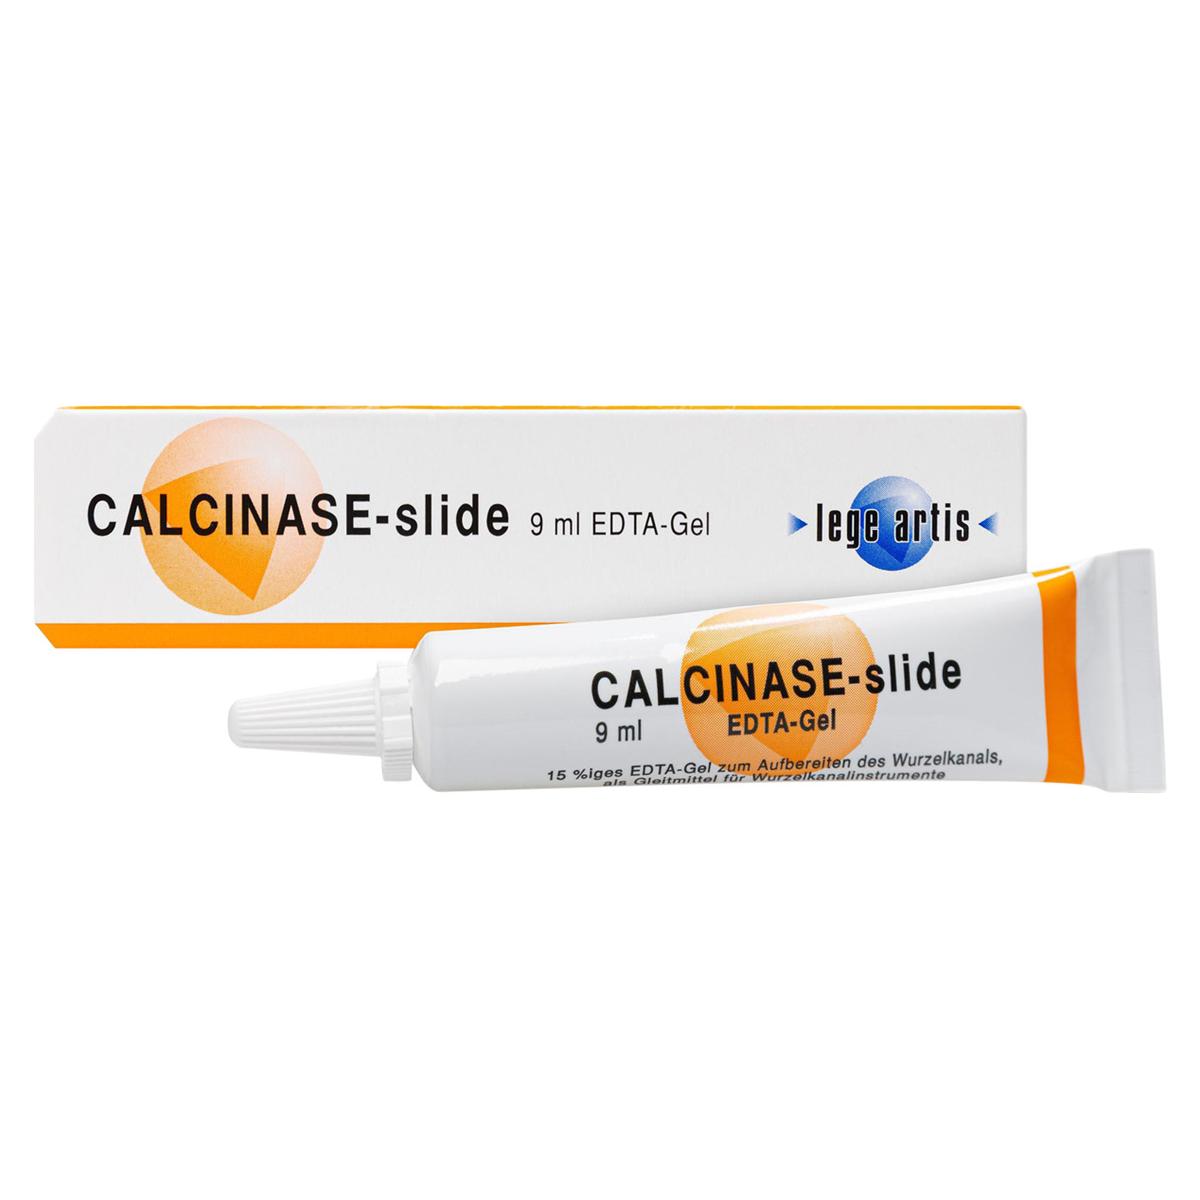 CALCINASE-slide - Tube 9 ml